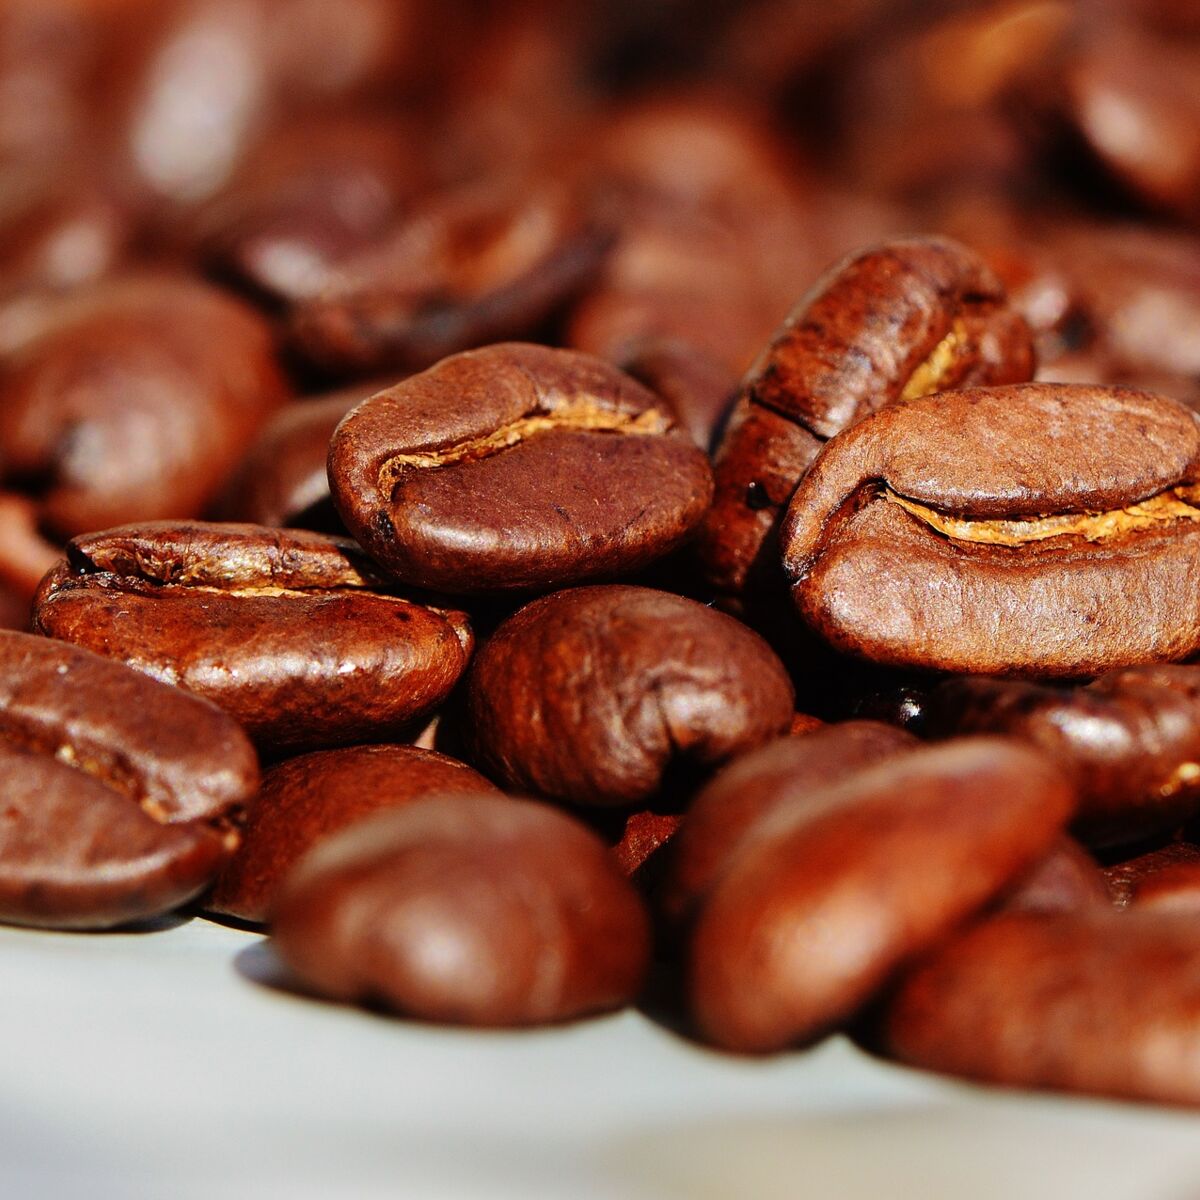 Divination avec les grains de café : comment lire les Buzios